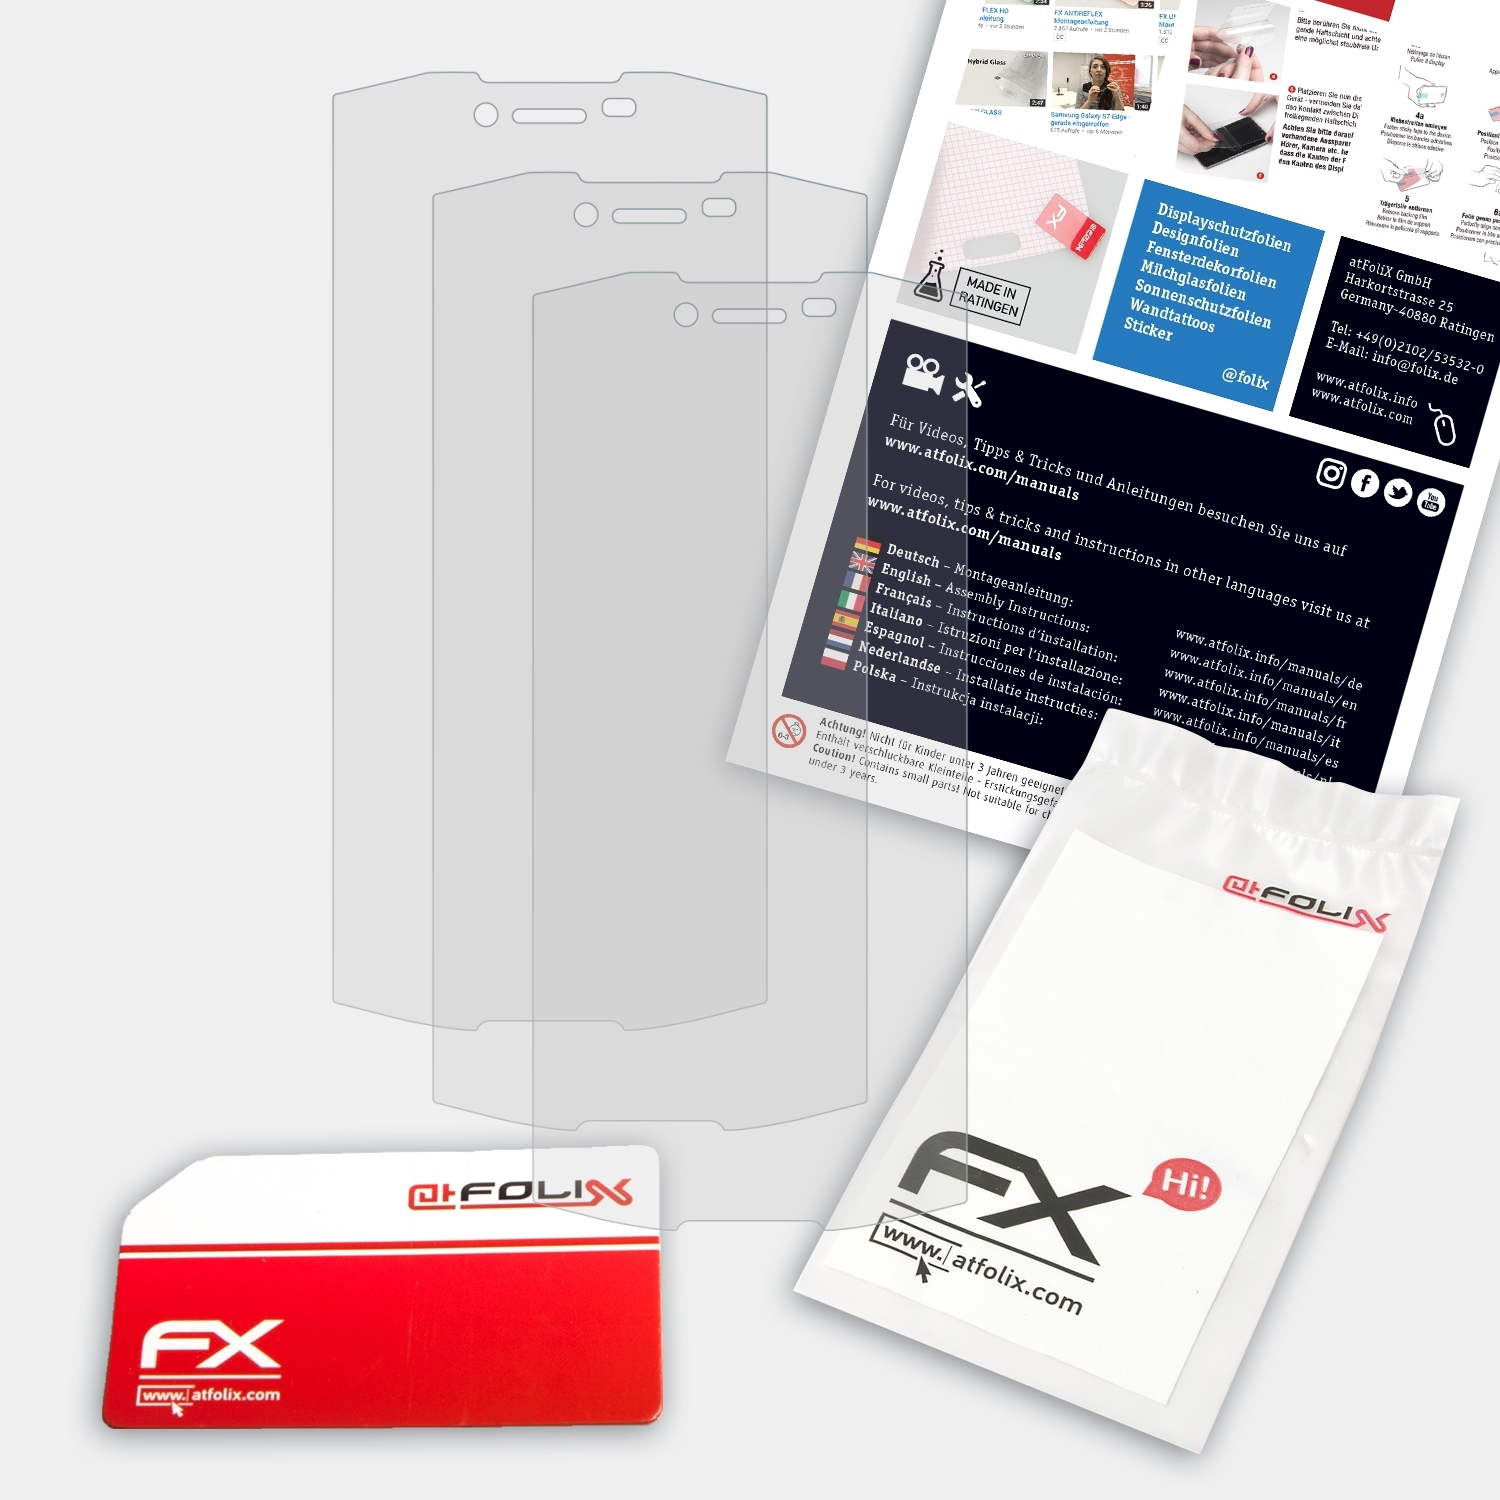 ATFOLIX 3x FX-Antireflex Displayschutz(für Doogee S55)